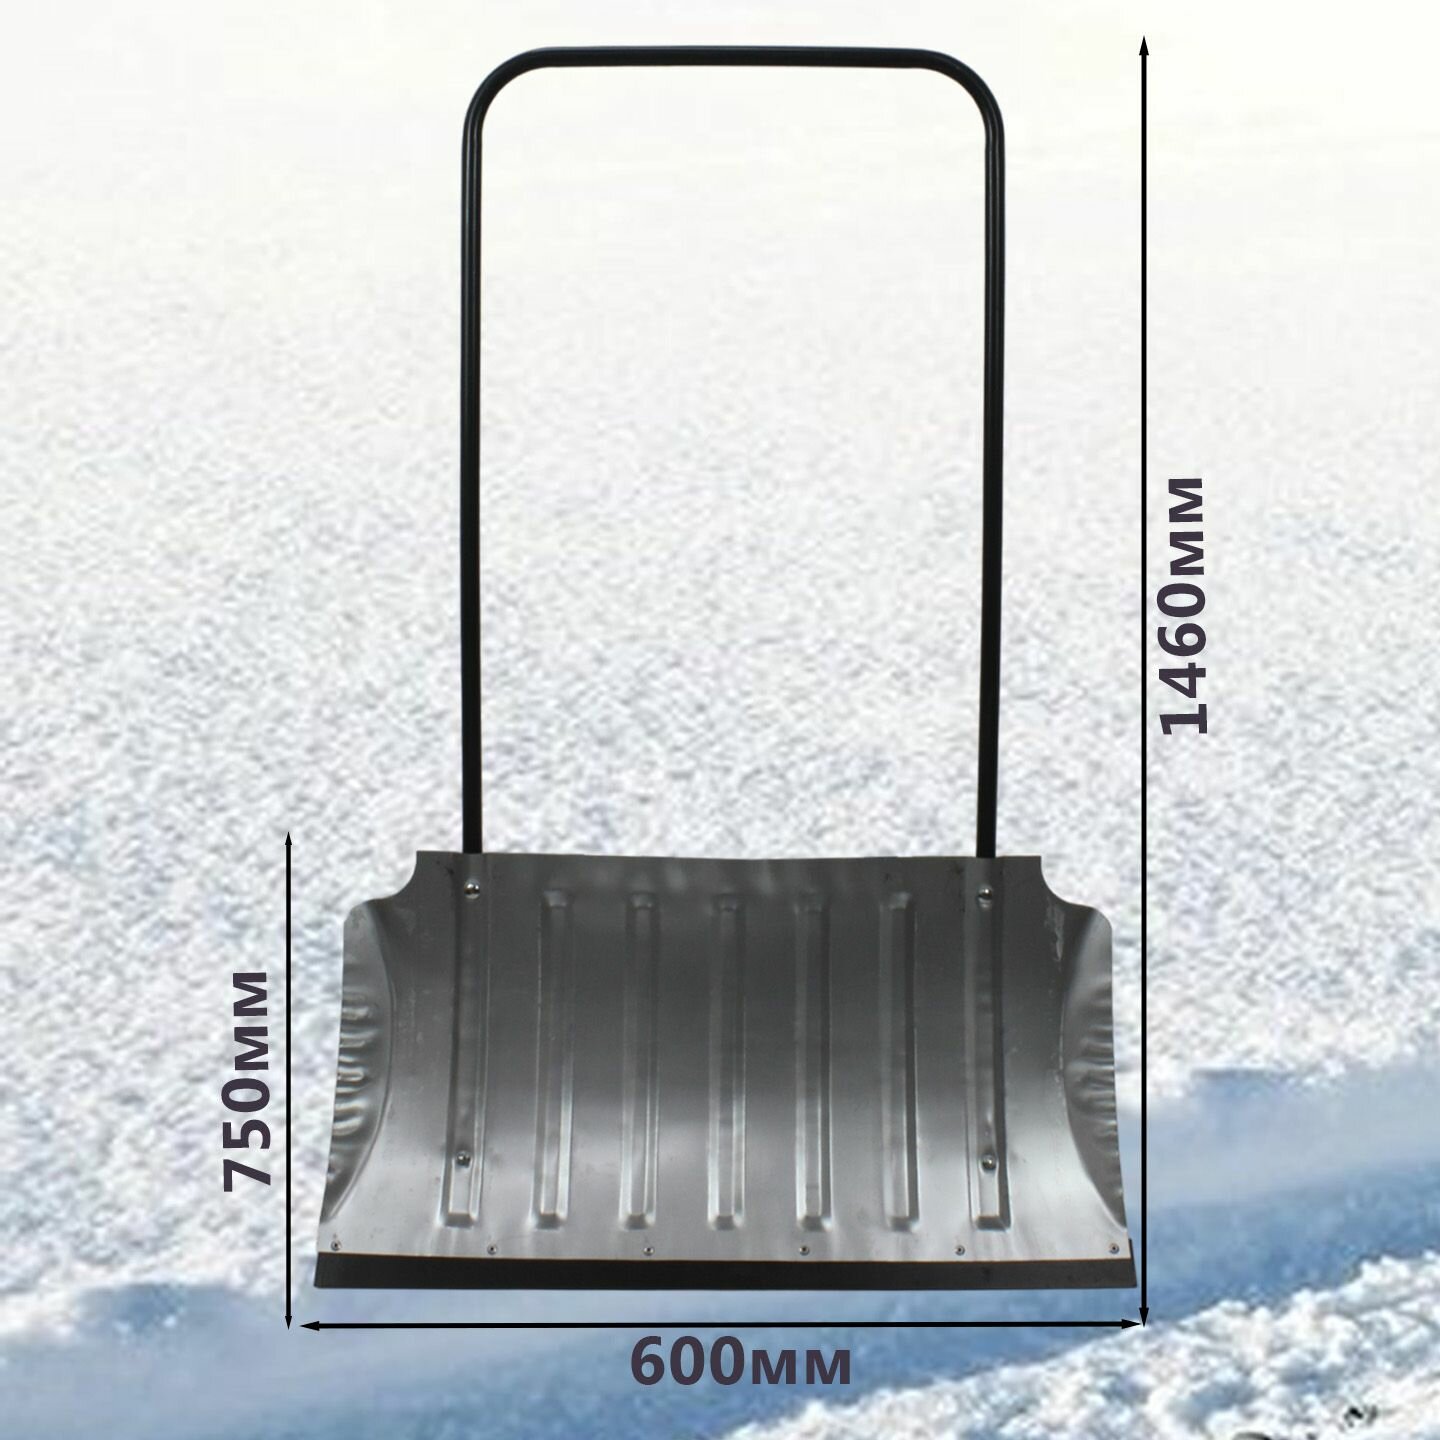 Скрепер для снега оцинкованный усиленный планкой, с ребрами жесткости. Размер ковша: 750*600*0,8 мм